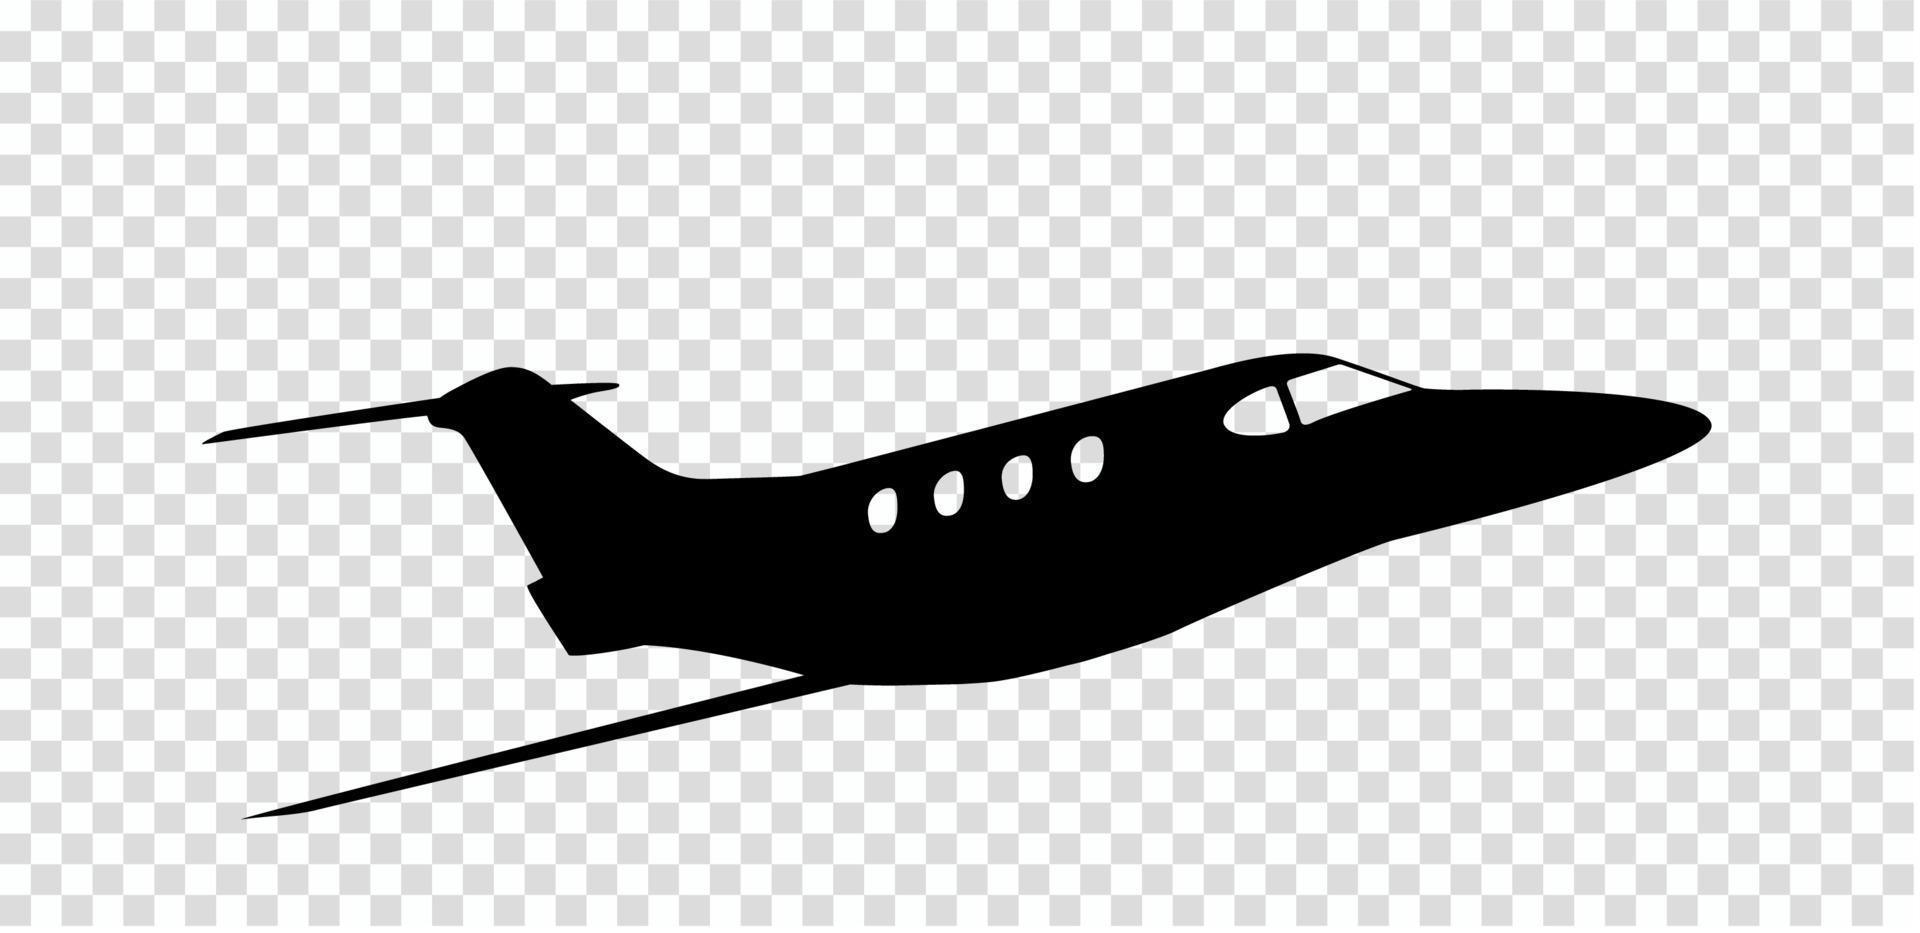 klistermärke till bil siluett av flygplan. yrke pilot. vektor illustration.